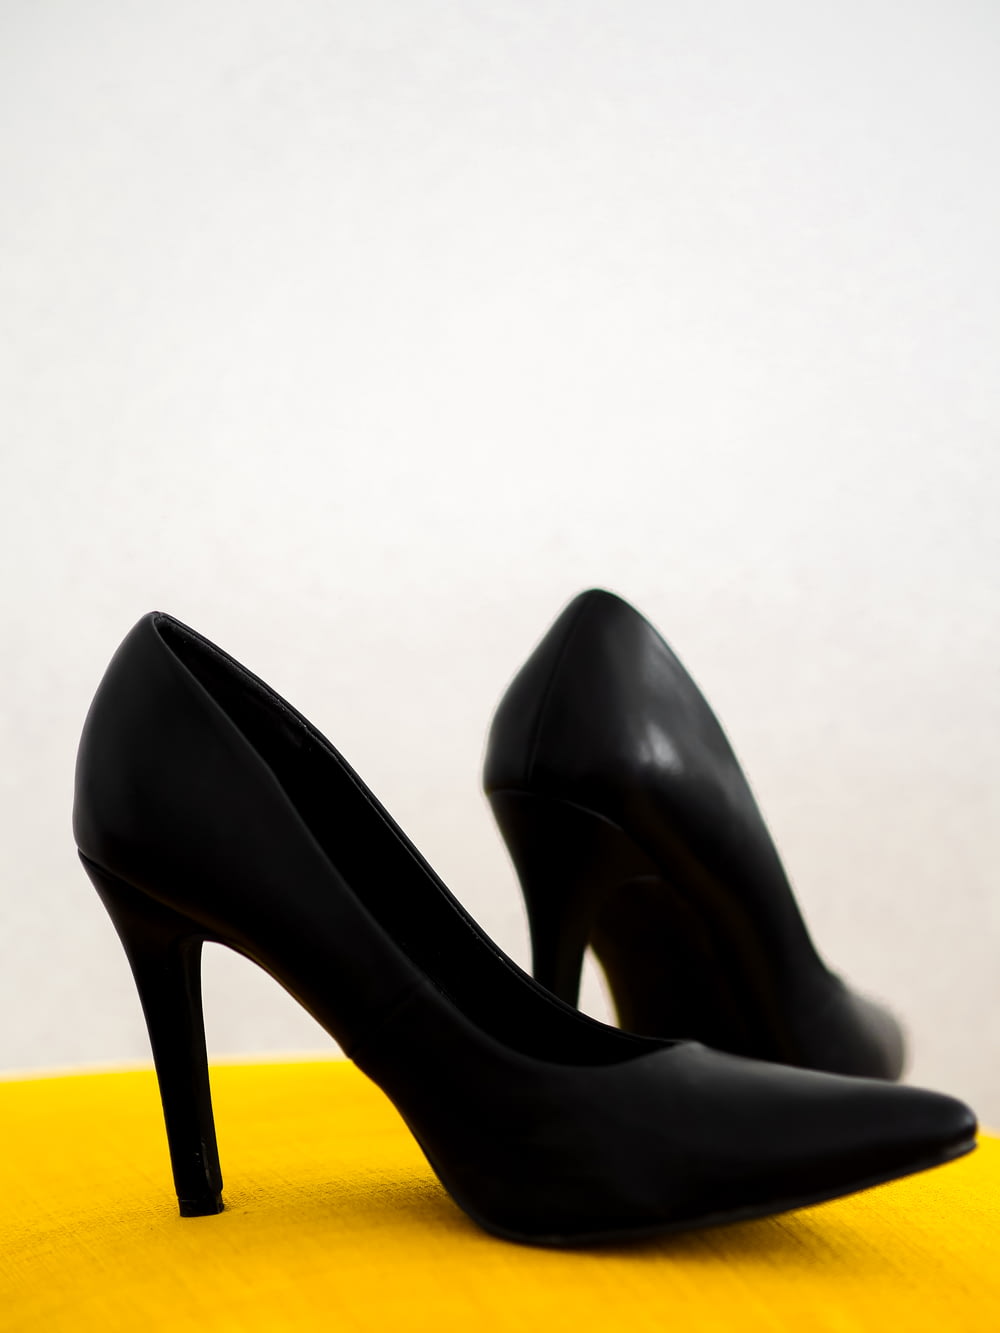 Schuhe mit schwarzen Lederabsätzen auf gelbem Stuhl